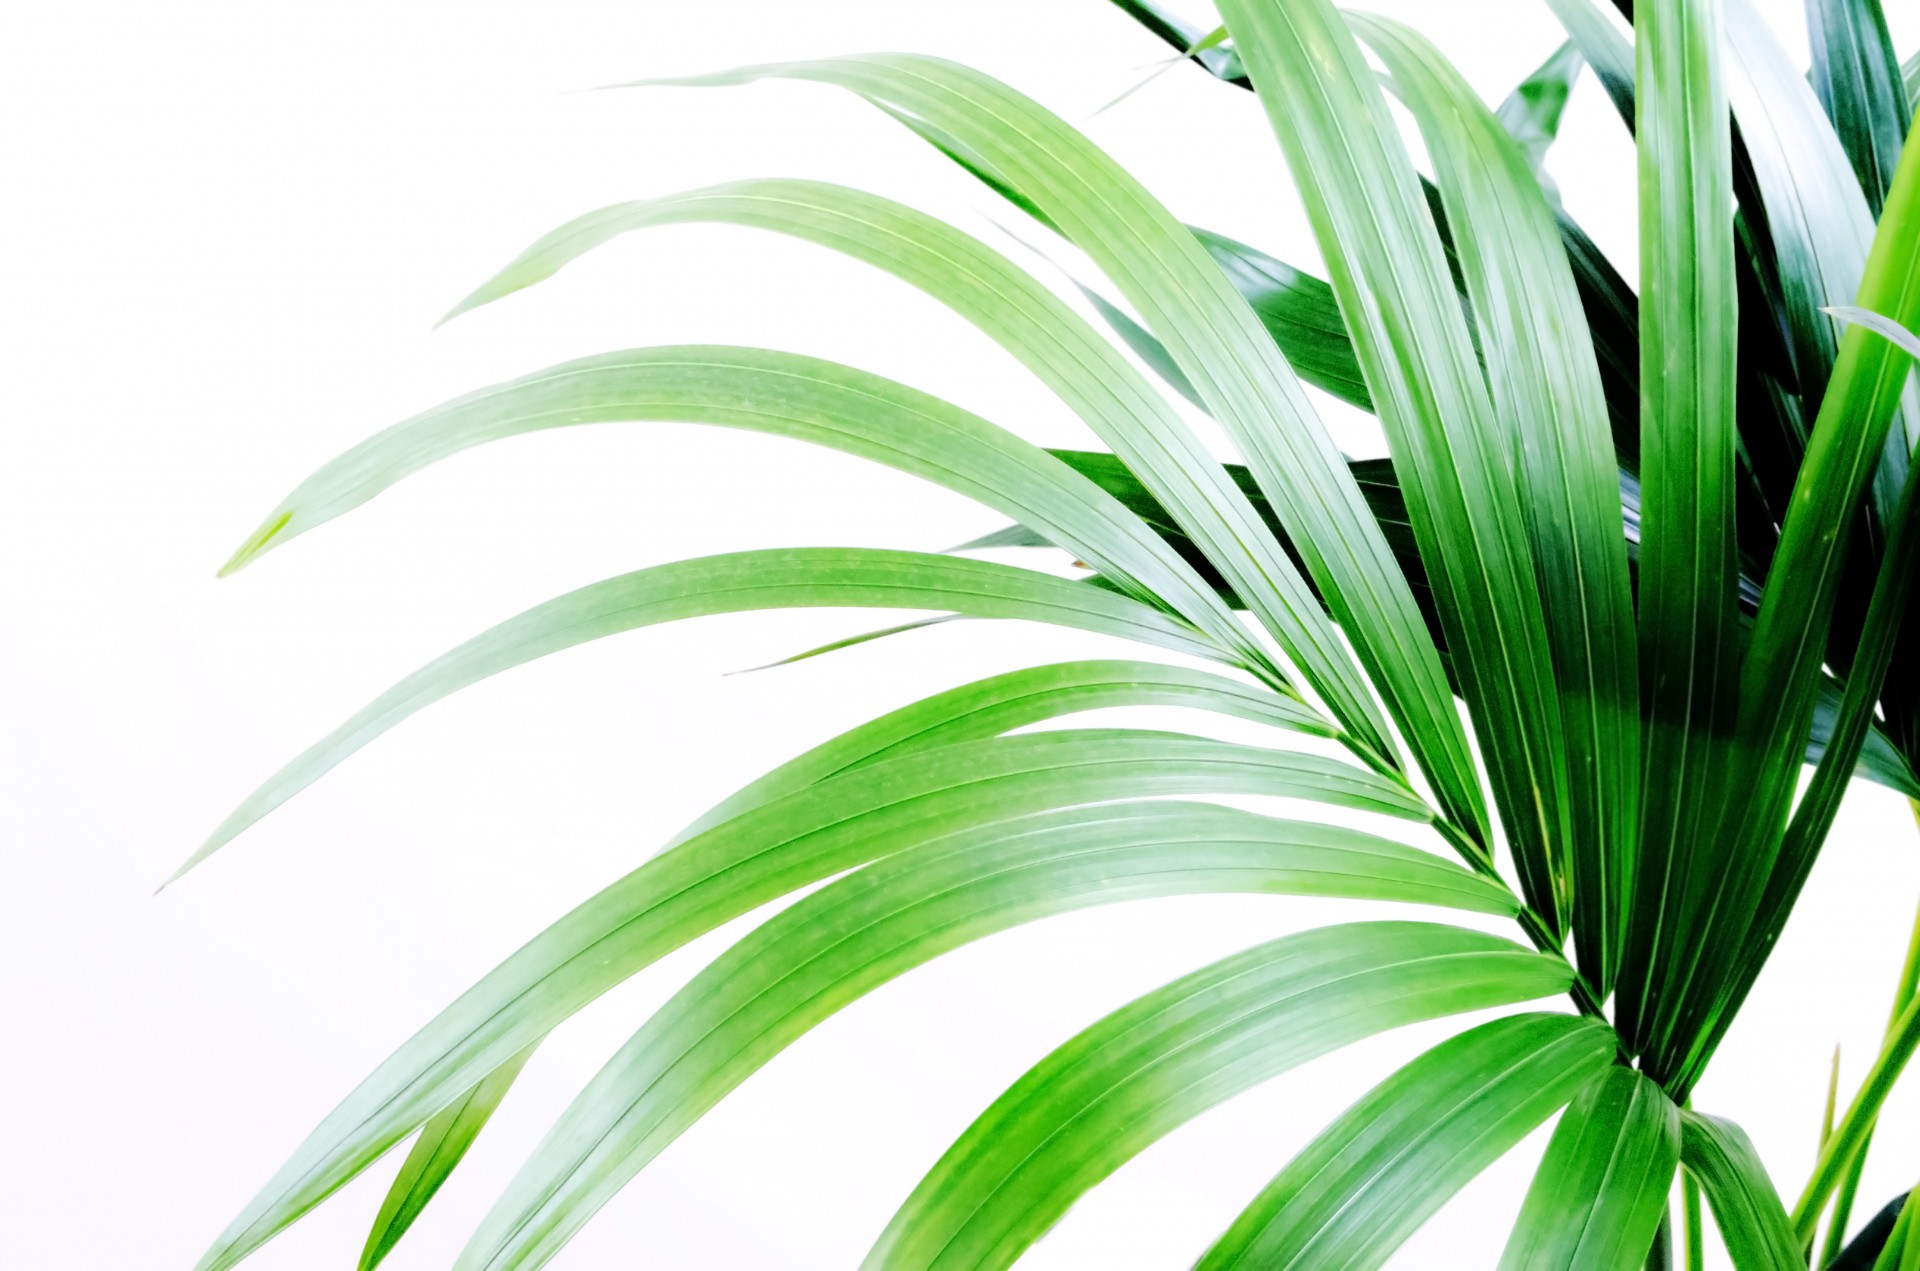 kentia palm houseplant free photo